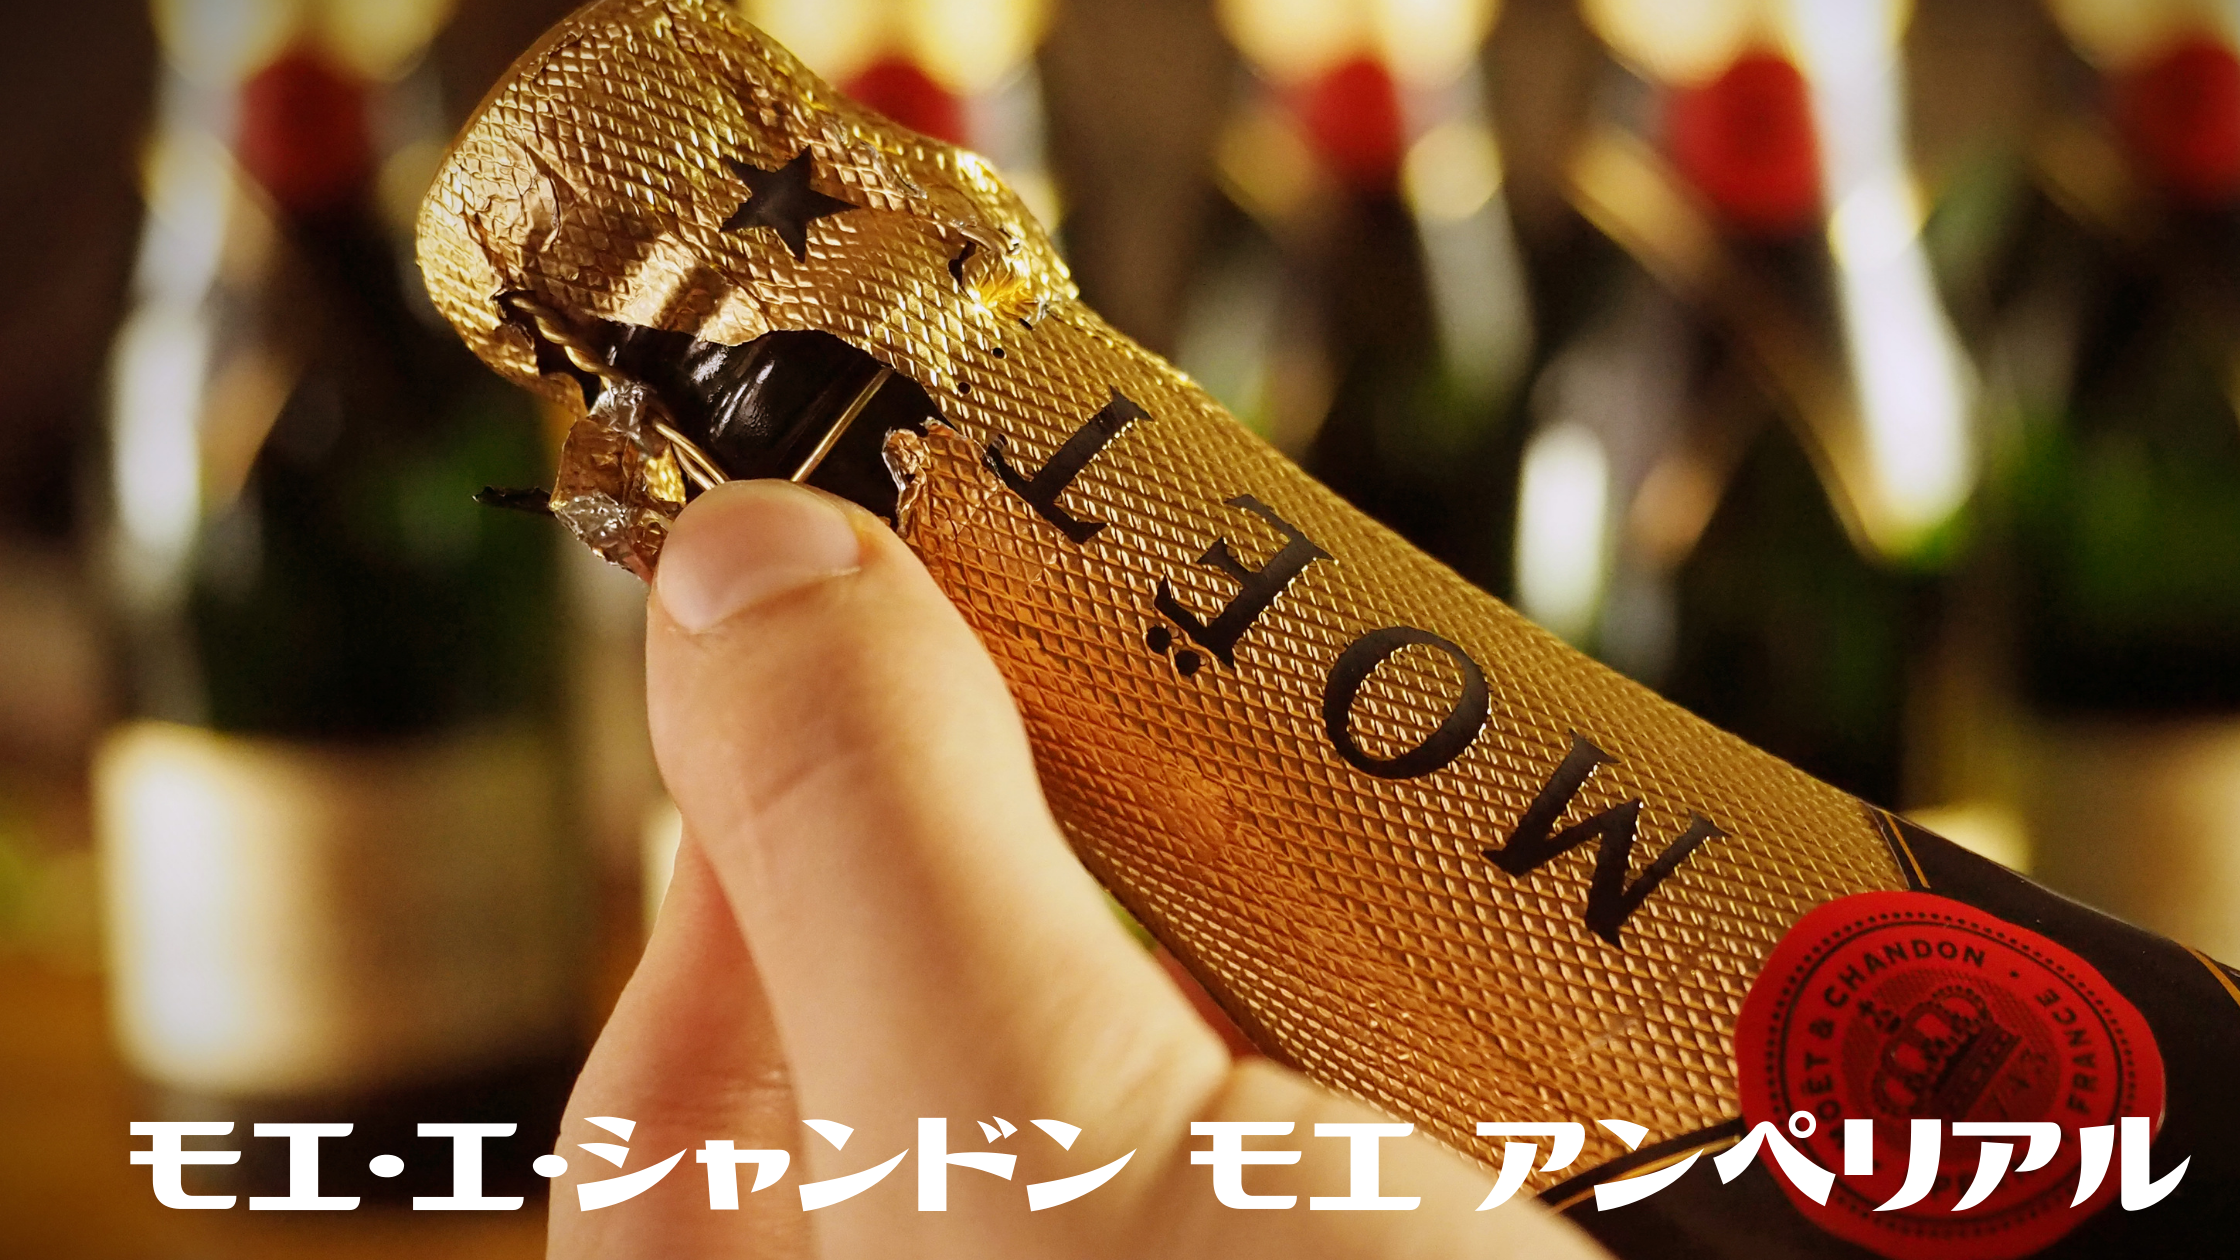 【ダウンタウンなう】東山紀之さんお気にいりのシャンパン